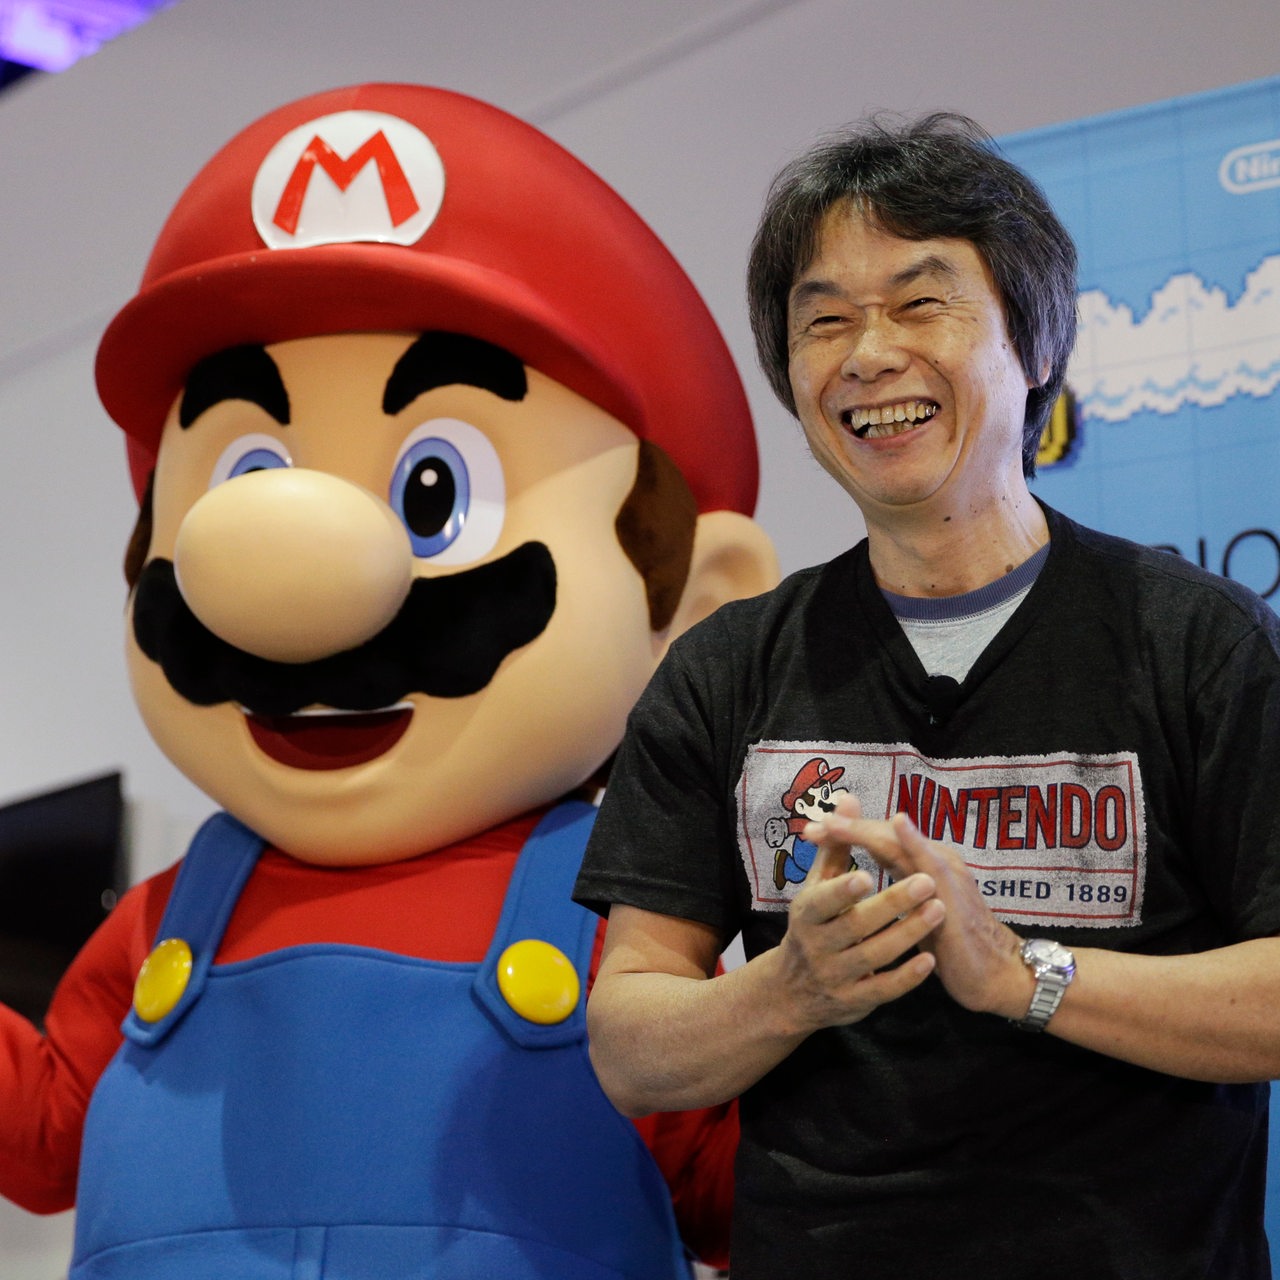 Videospieldesigner Shigeru Miyamoto mit der Figur Mario (Archivcbild)